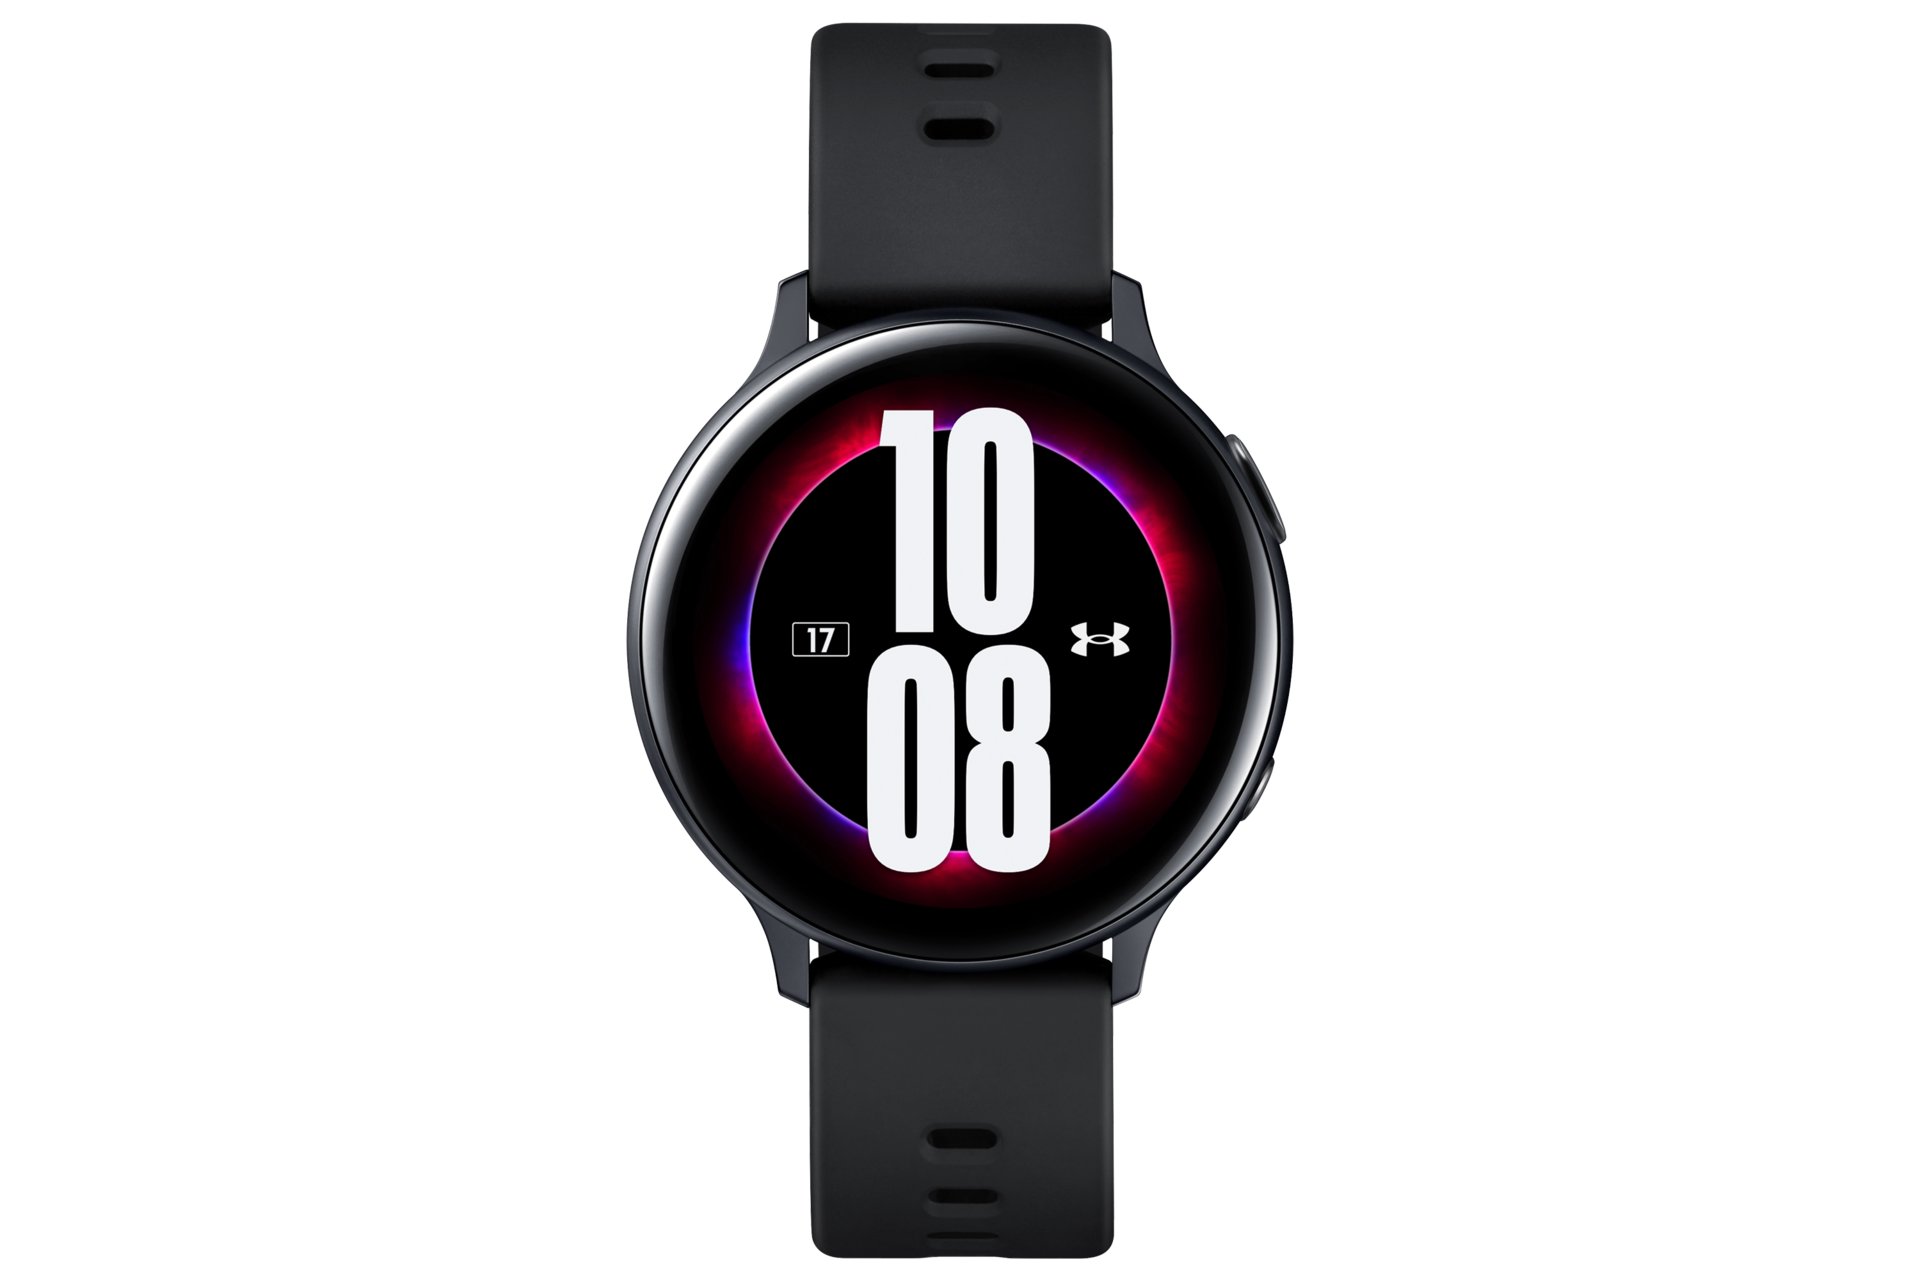 Đồng hồ Galaxy Watch Active2 không chỉ giúp bạn quản lý thời gian hiệu quả hơn, mà còn rất thời trang và cá tính. Cùng xem các mẫu đồng hồ tuyệt đẹp này và chọn cho mình một chiếc phù hợp nhất nào!